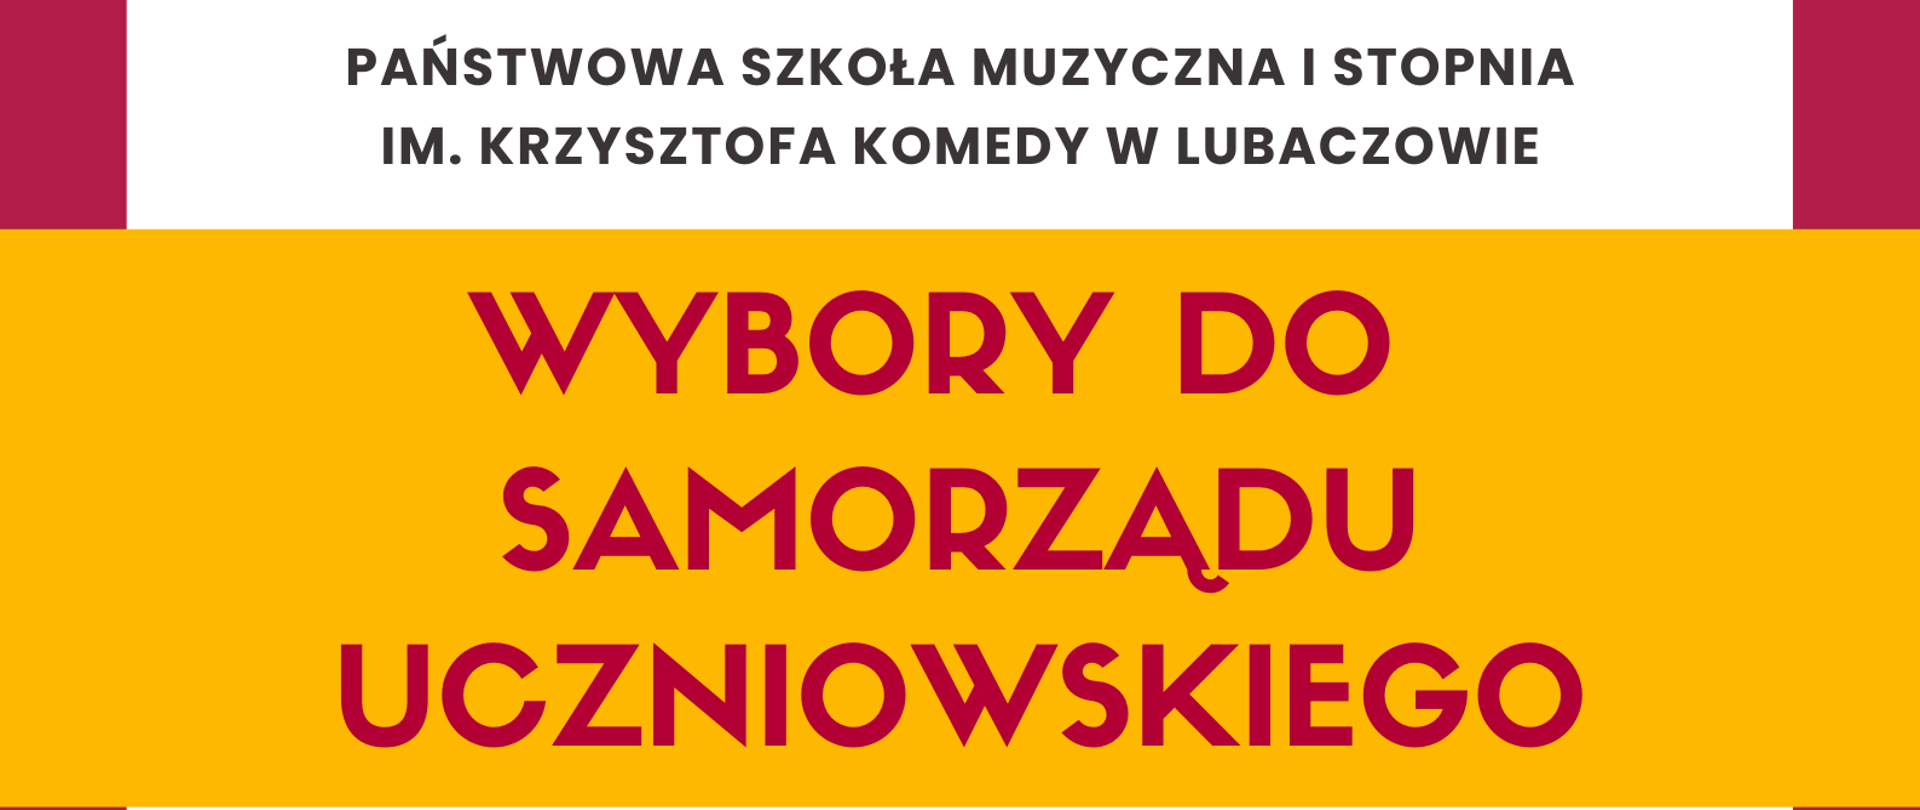 Kolorowy plakat z ikonografią dzieci na dole i informacją o wyborach do samorządu uczniowskiego w terminie do 30 września